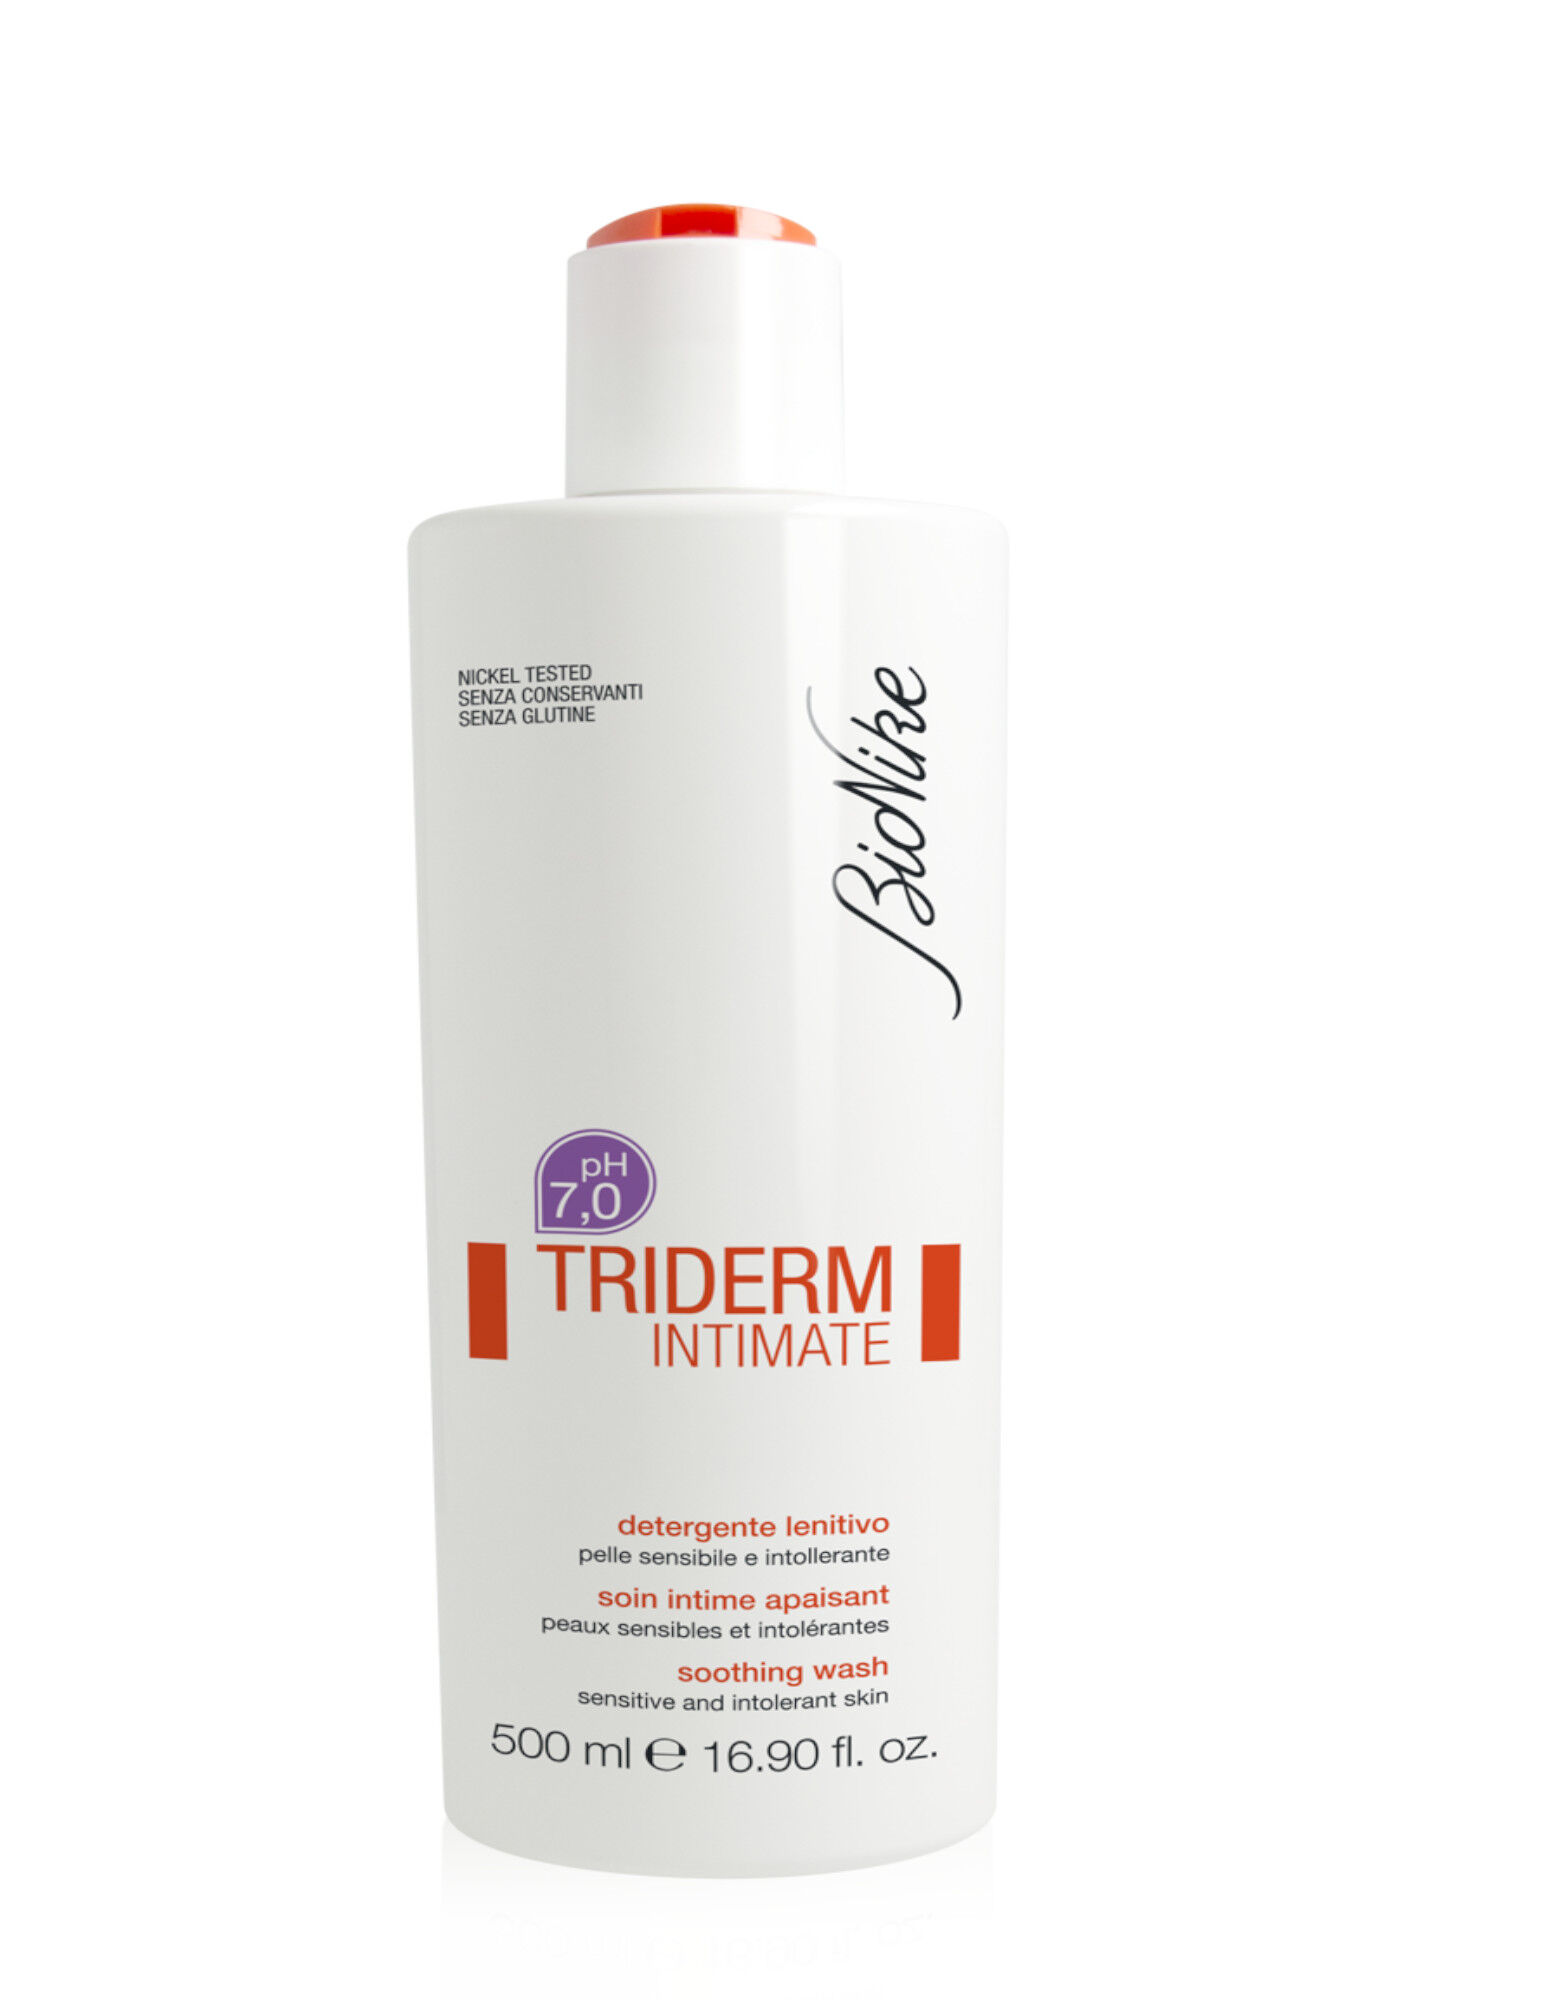 BIONIKE Triderm - Intimate Ph7 Detergente Lenitivo 500ml